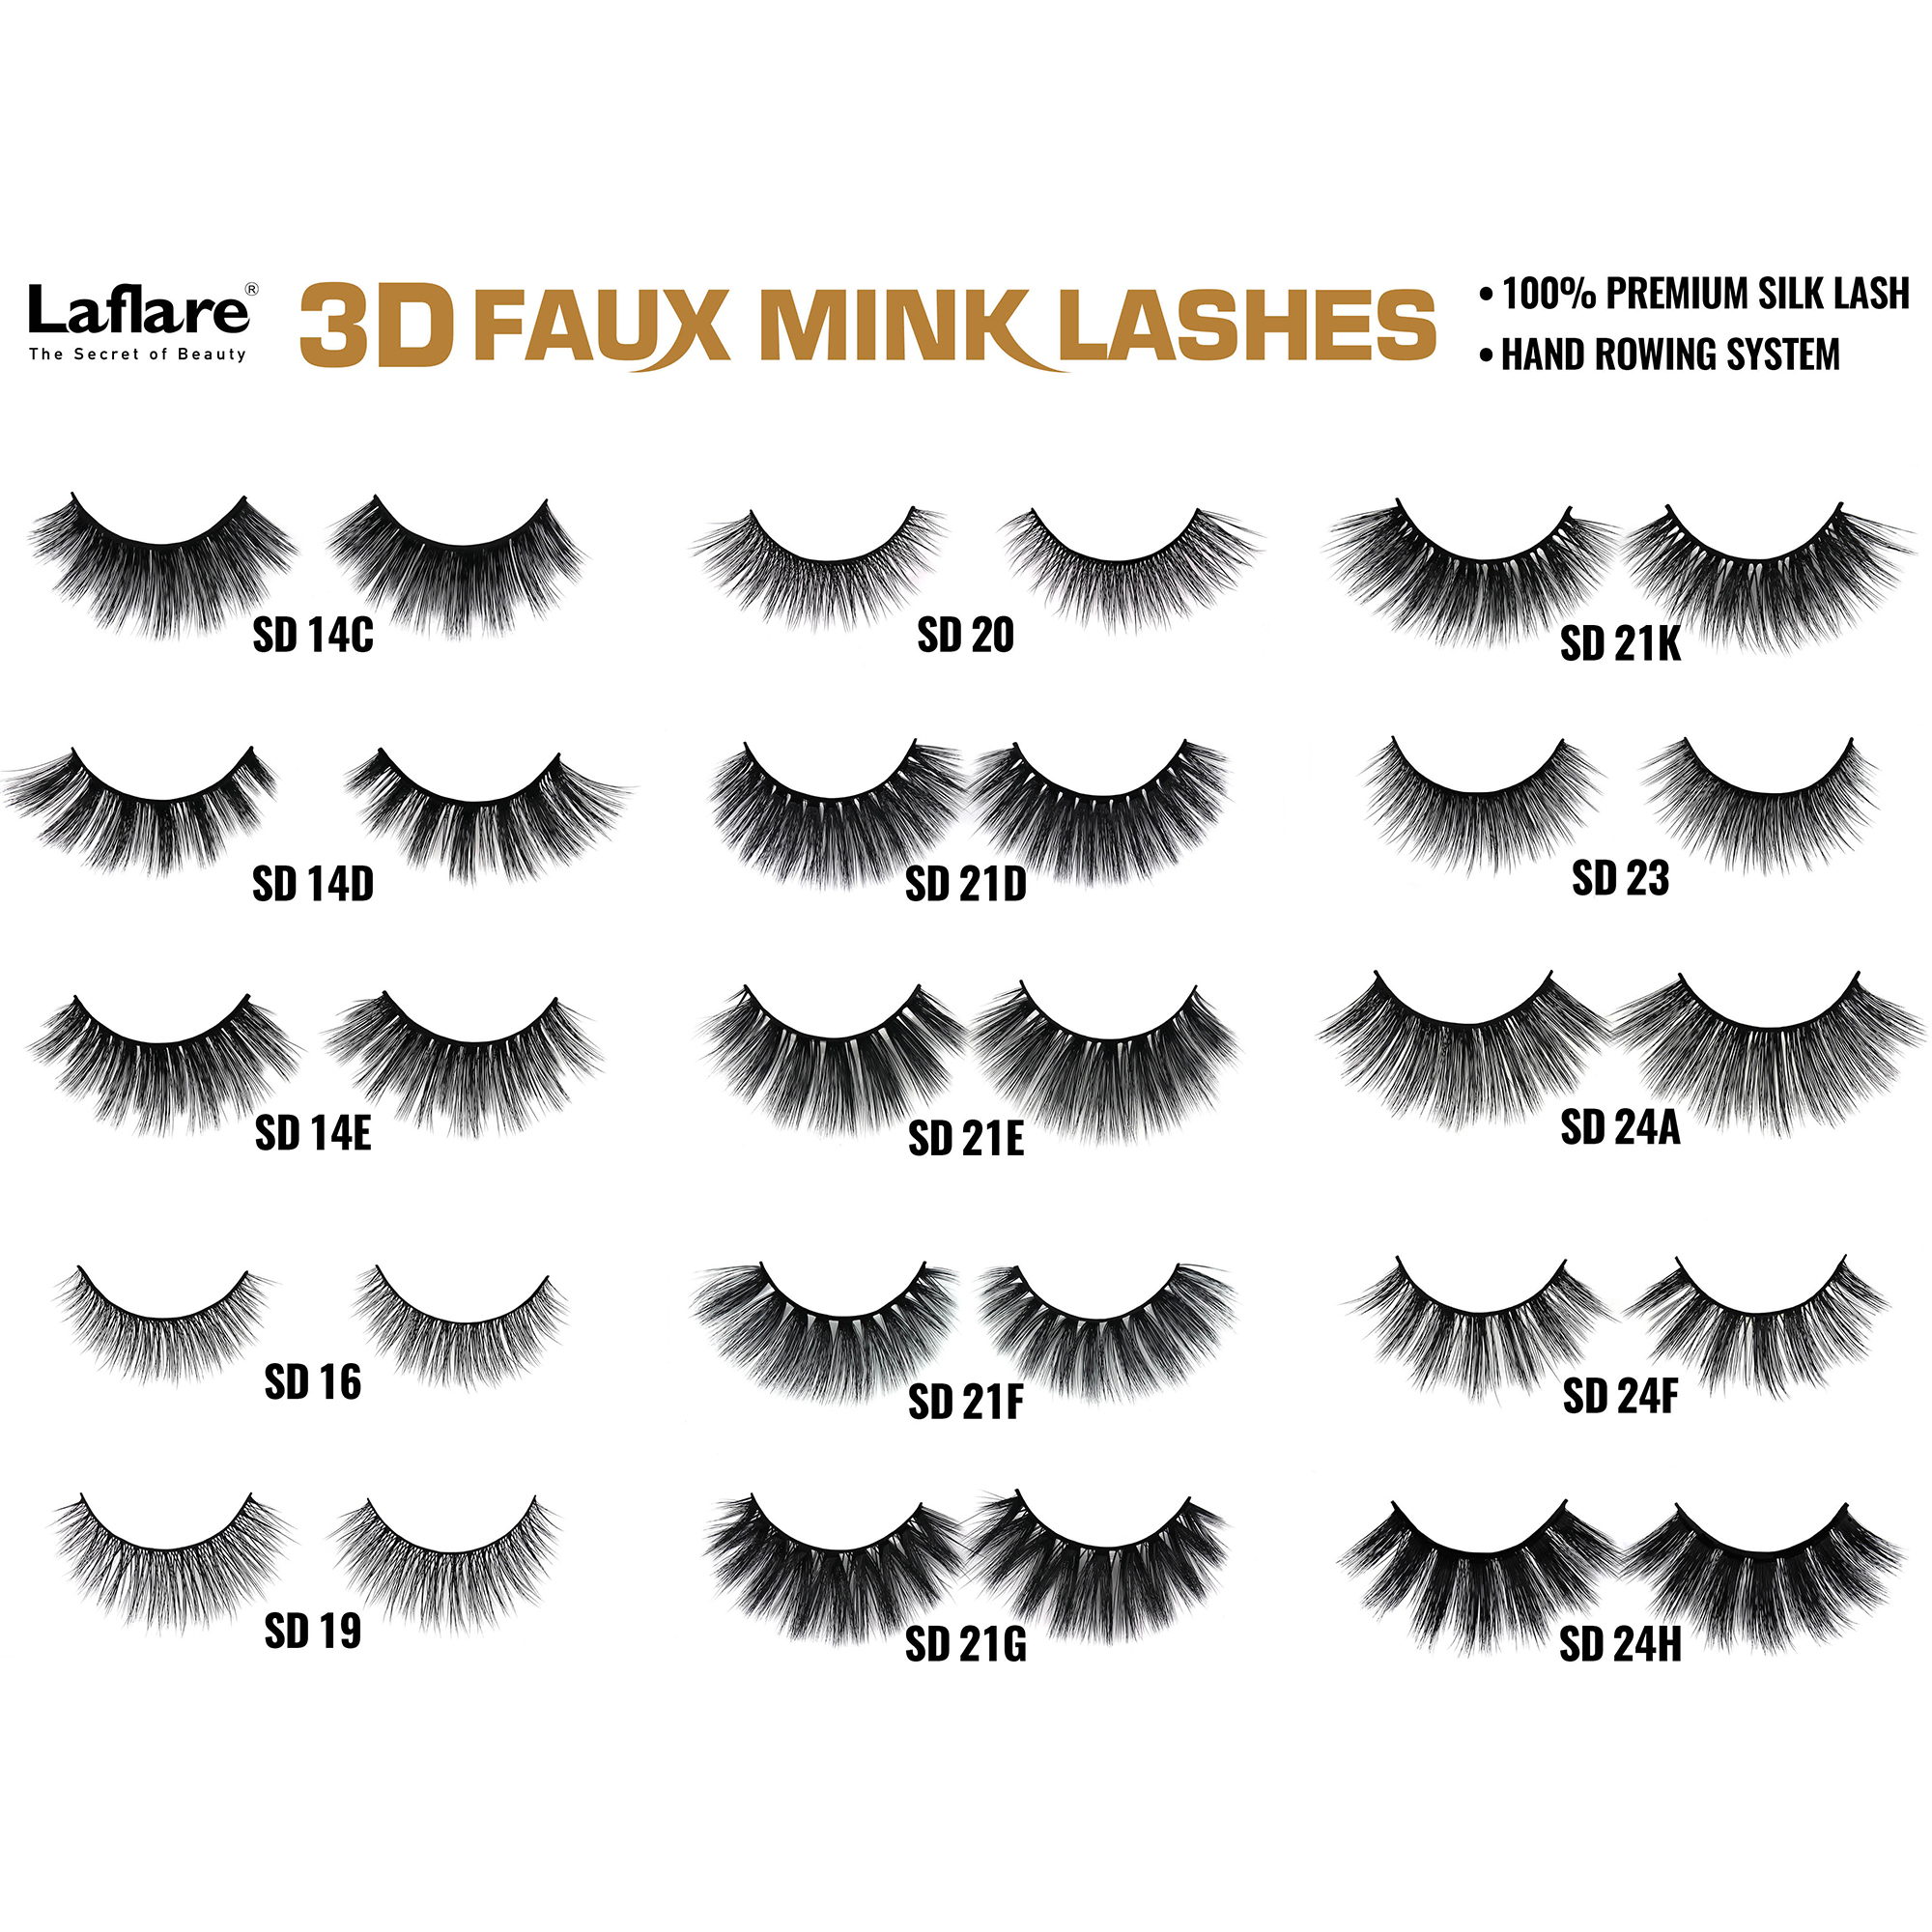 LAFLARE 3d Faux Mink Lashes - SD14C